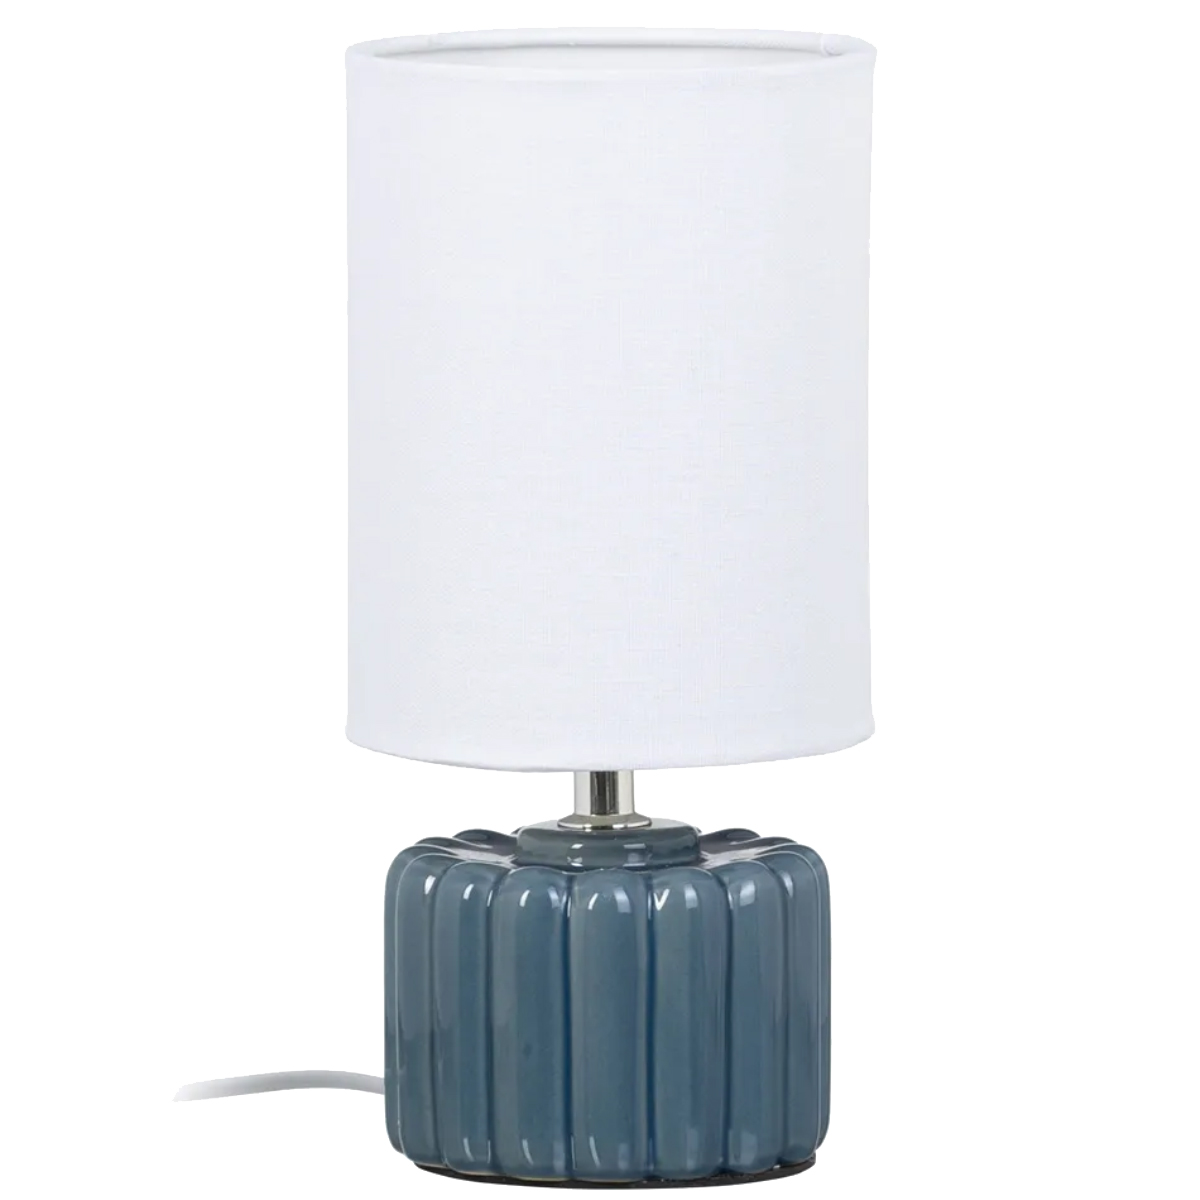 Ceramic lamp 28 cm - Blue